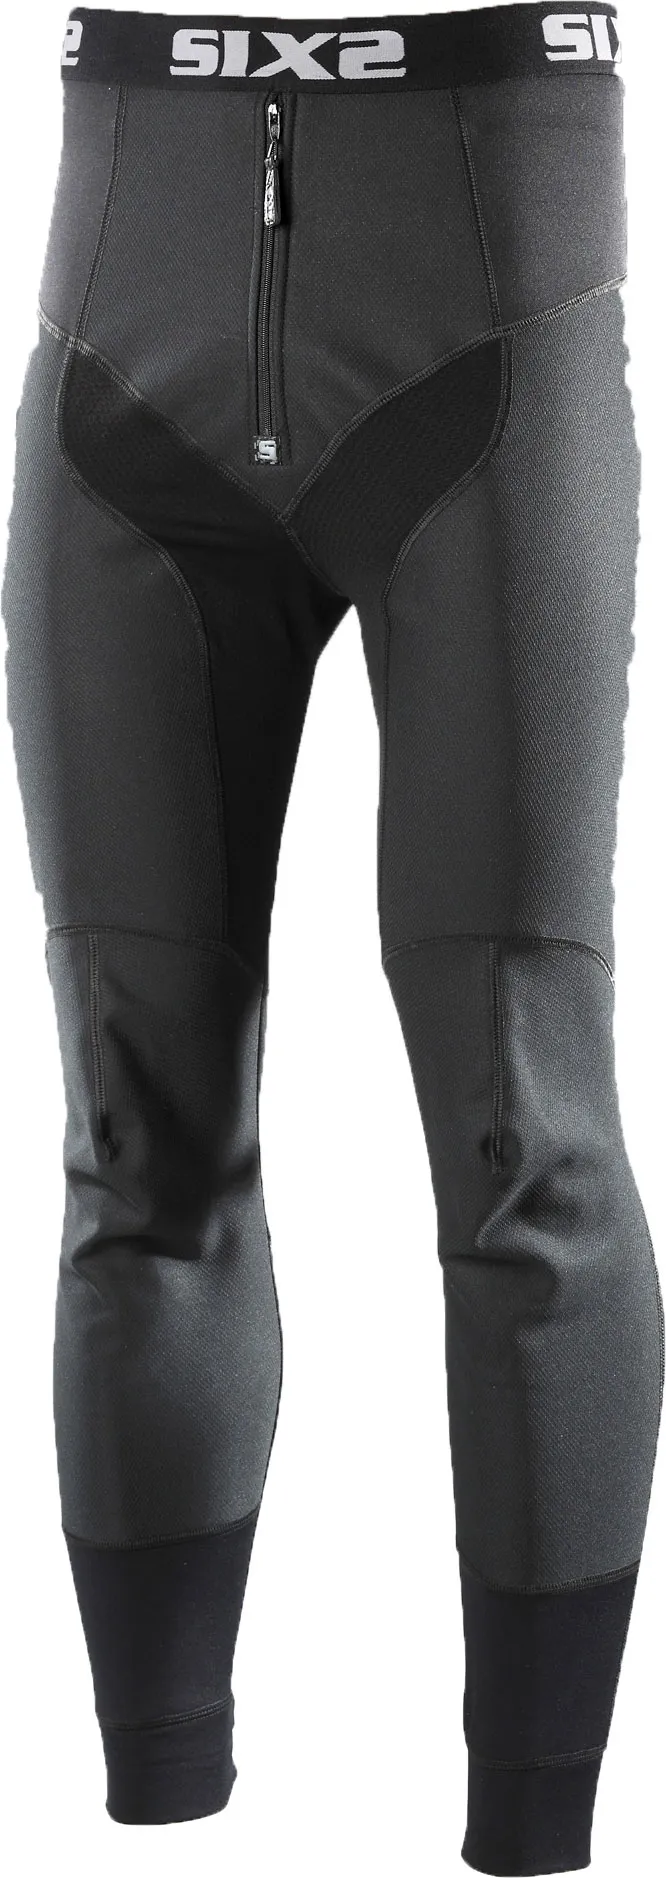 Sixs WTP, pantalon fonctionnel - Noir - 3XL